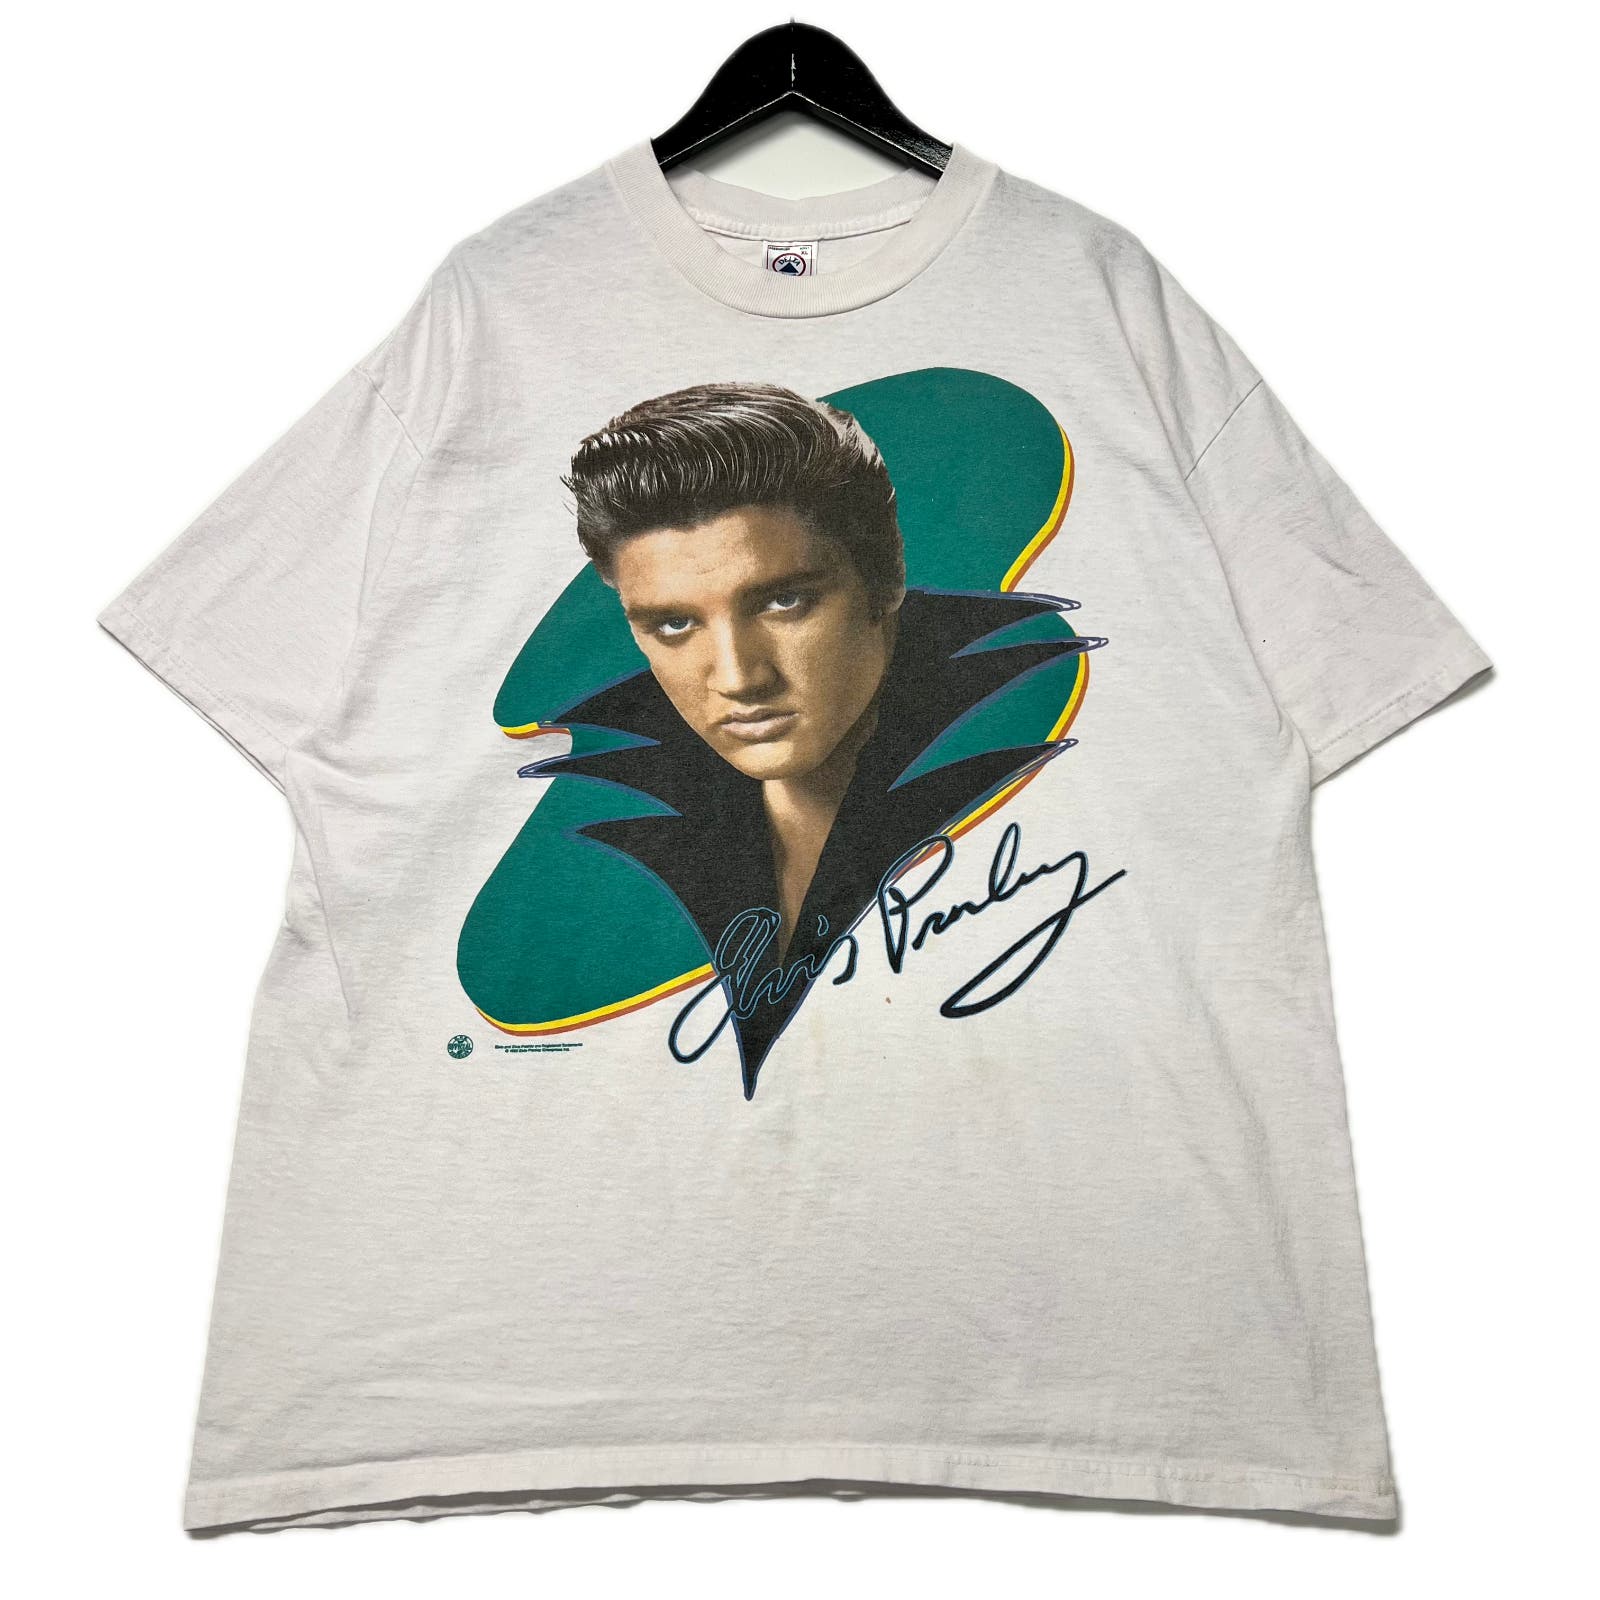 Vintage 1996 Elvis Presley Graphic White T-Shirt Size XL Pro Delta